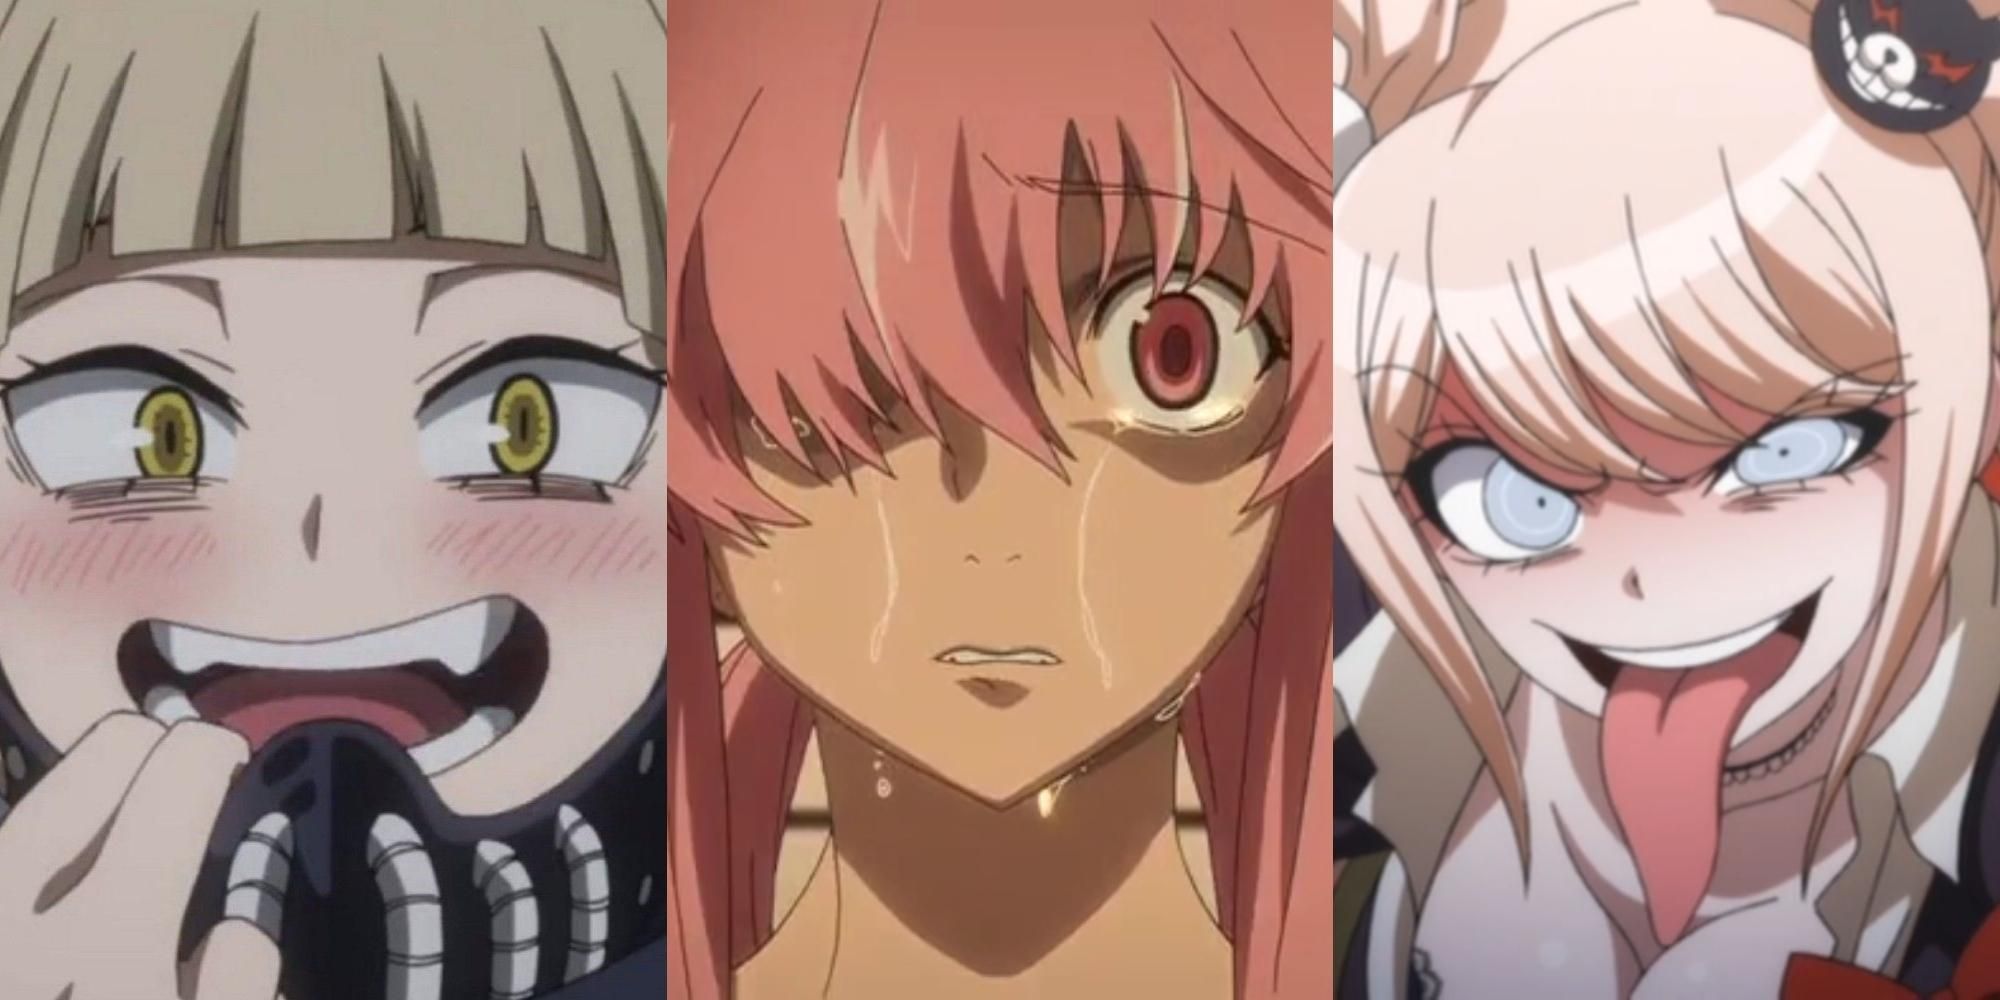 Darkest Anime Girls, Ranked